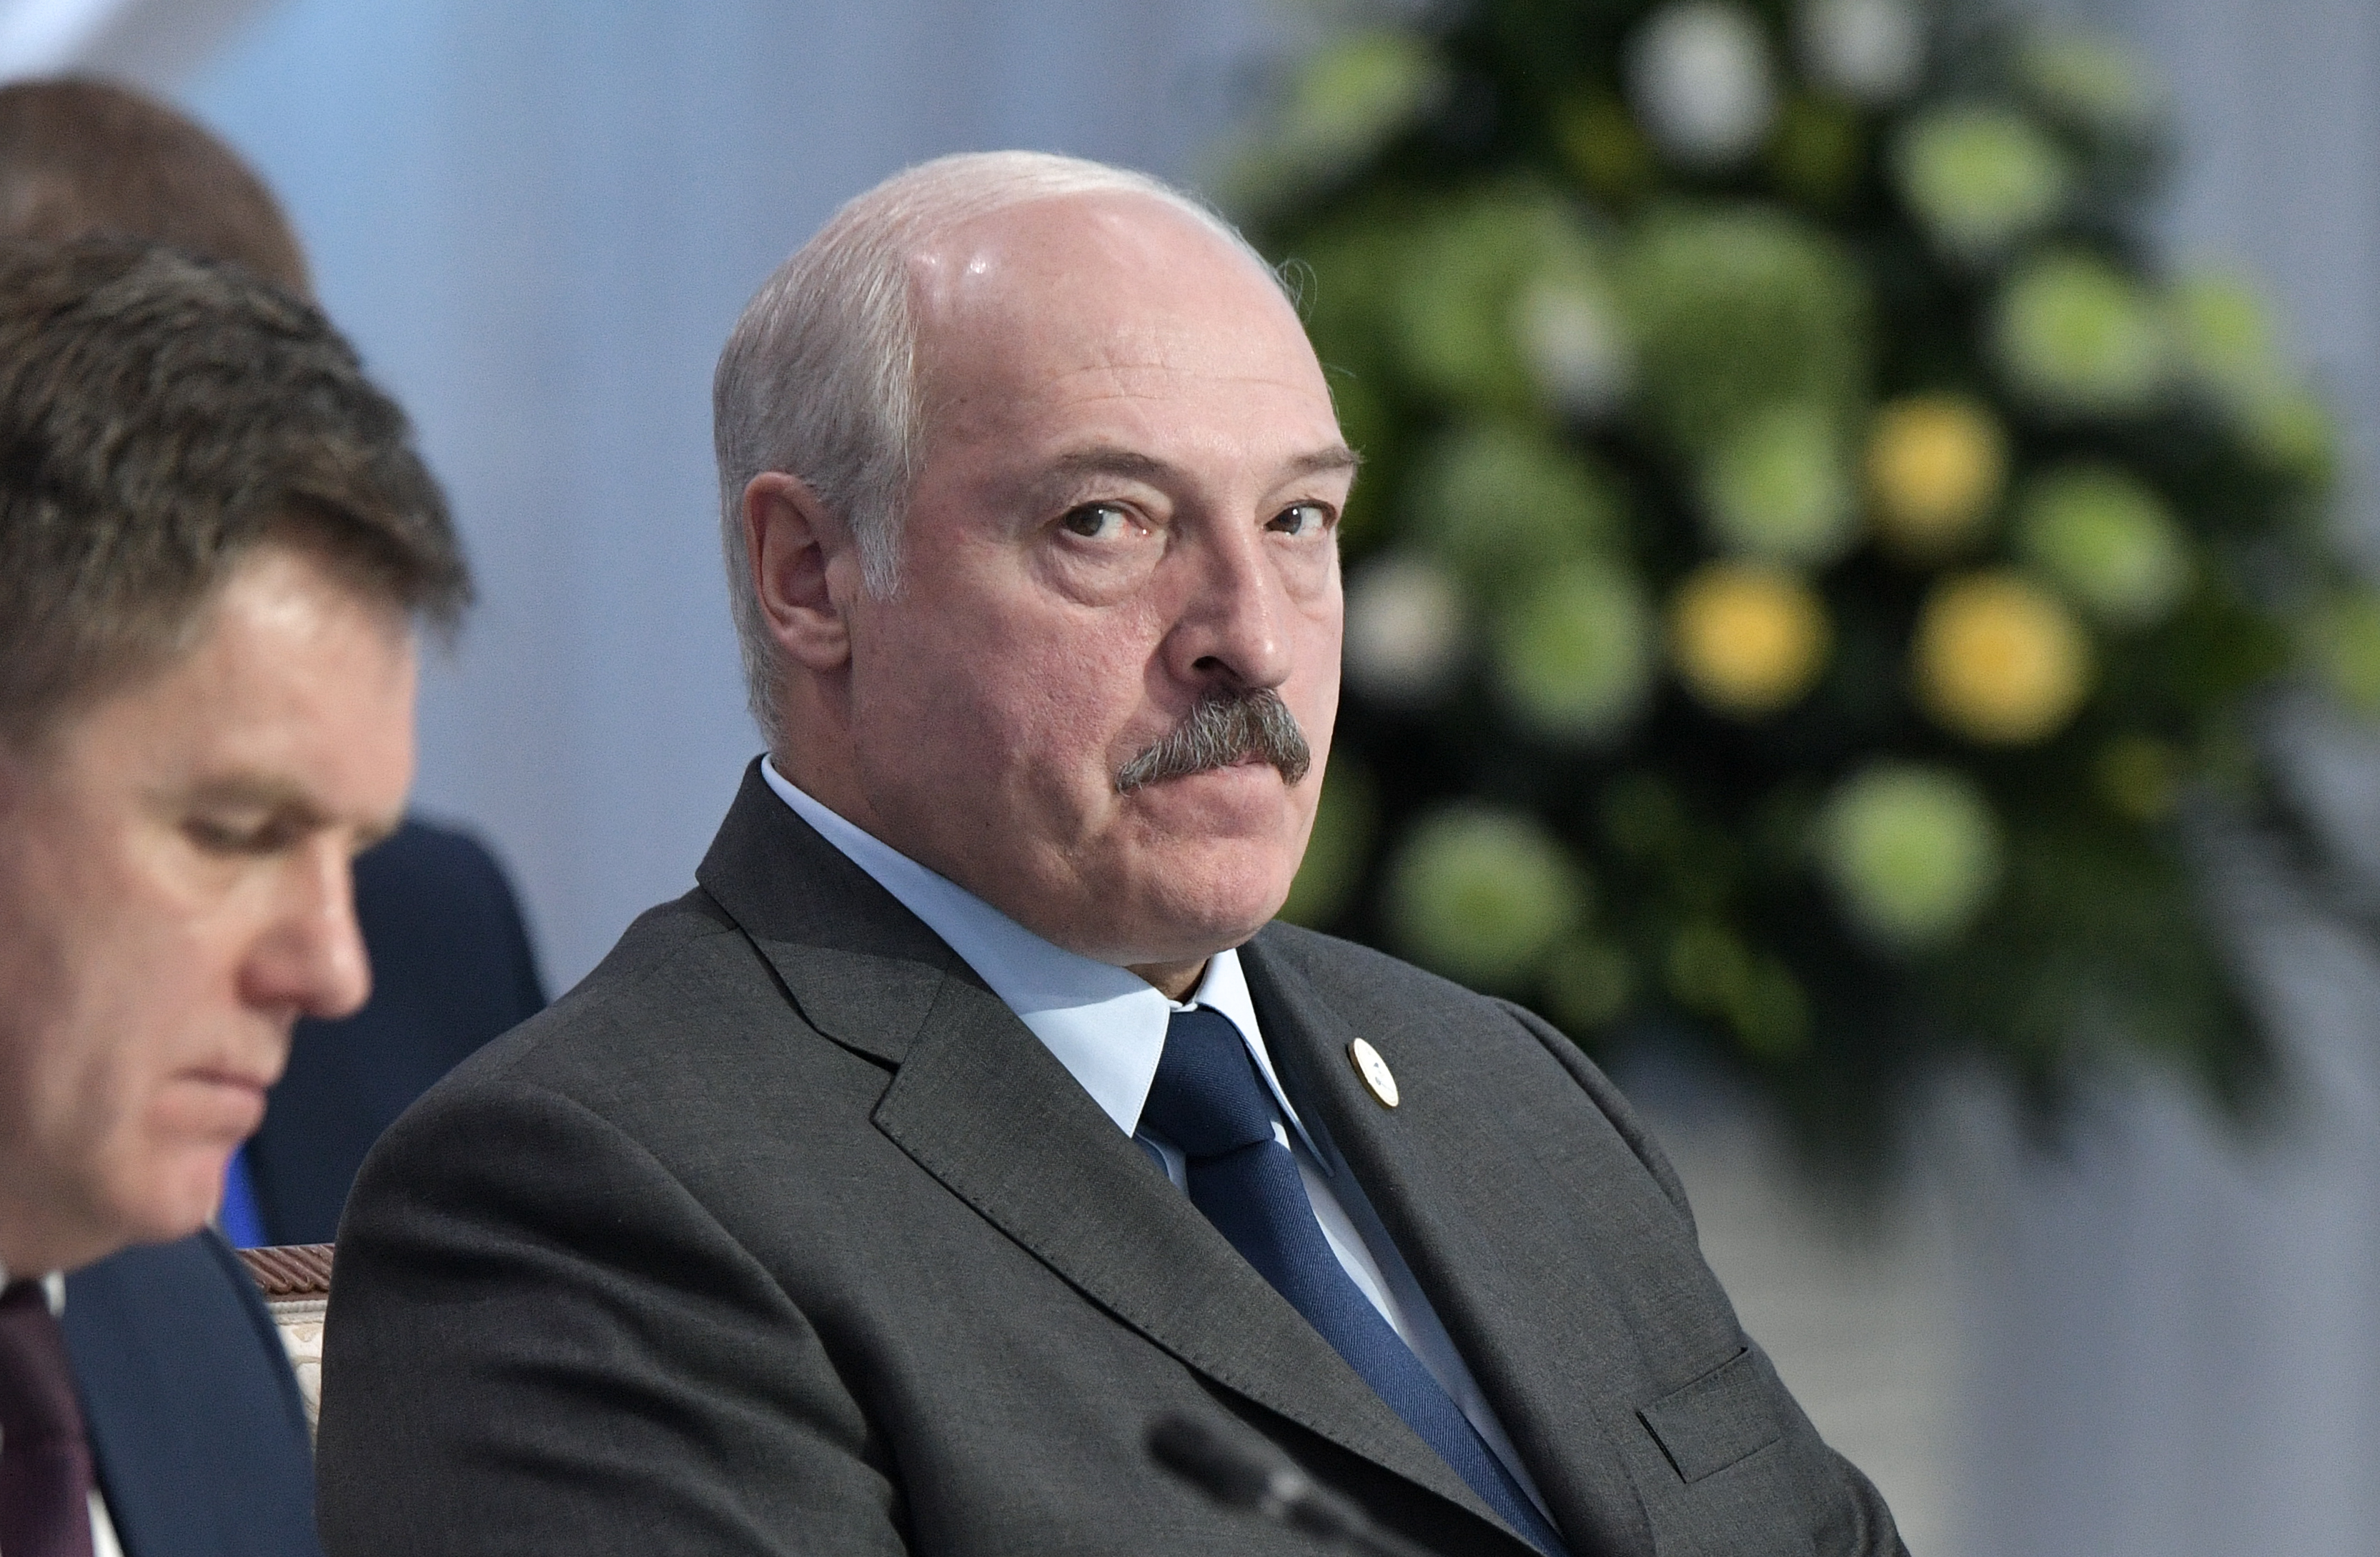 Biaoruskie problemy, czyli ukaszenka nie zosta uznany legalnym prezydentem przez UE. Protestw cig dalszy